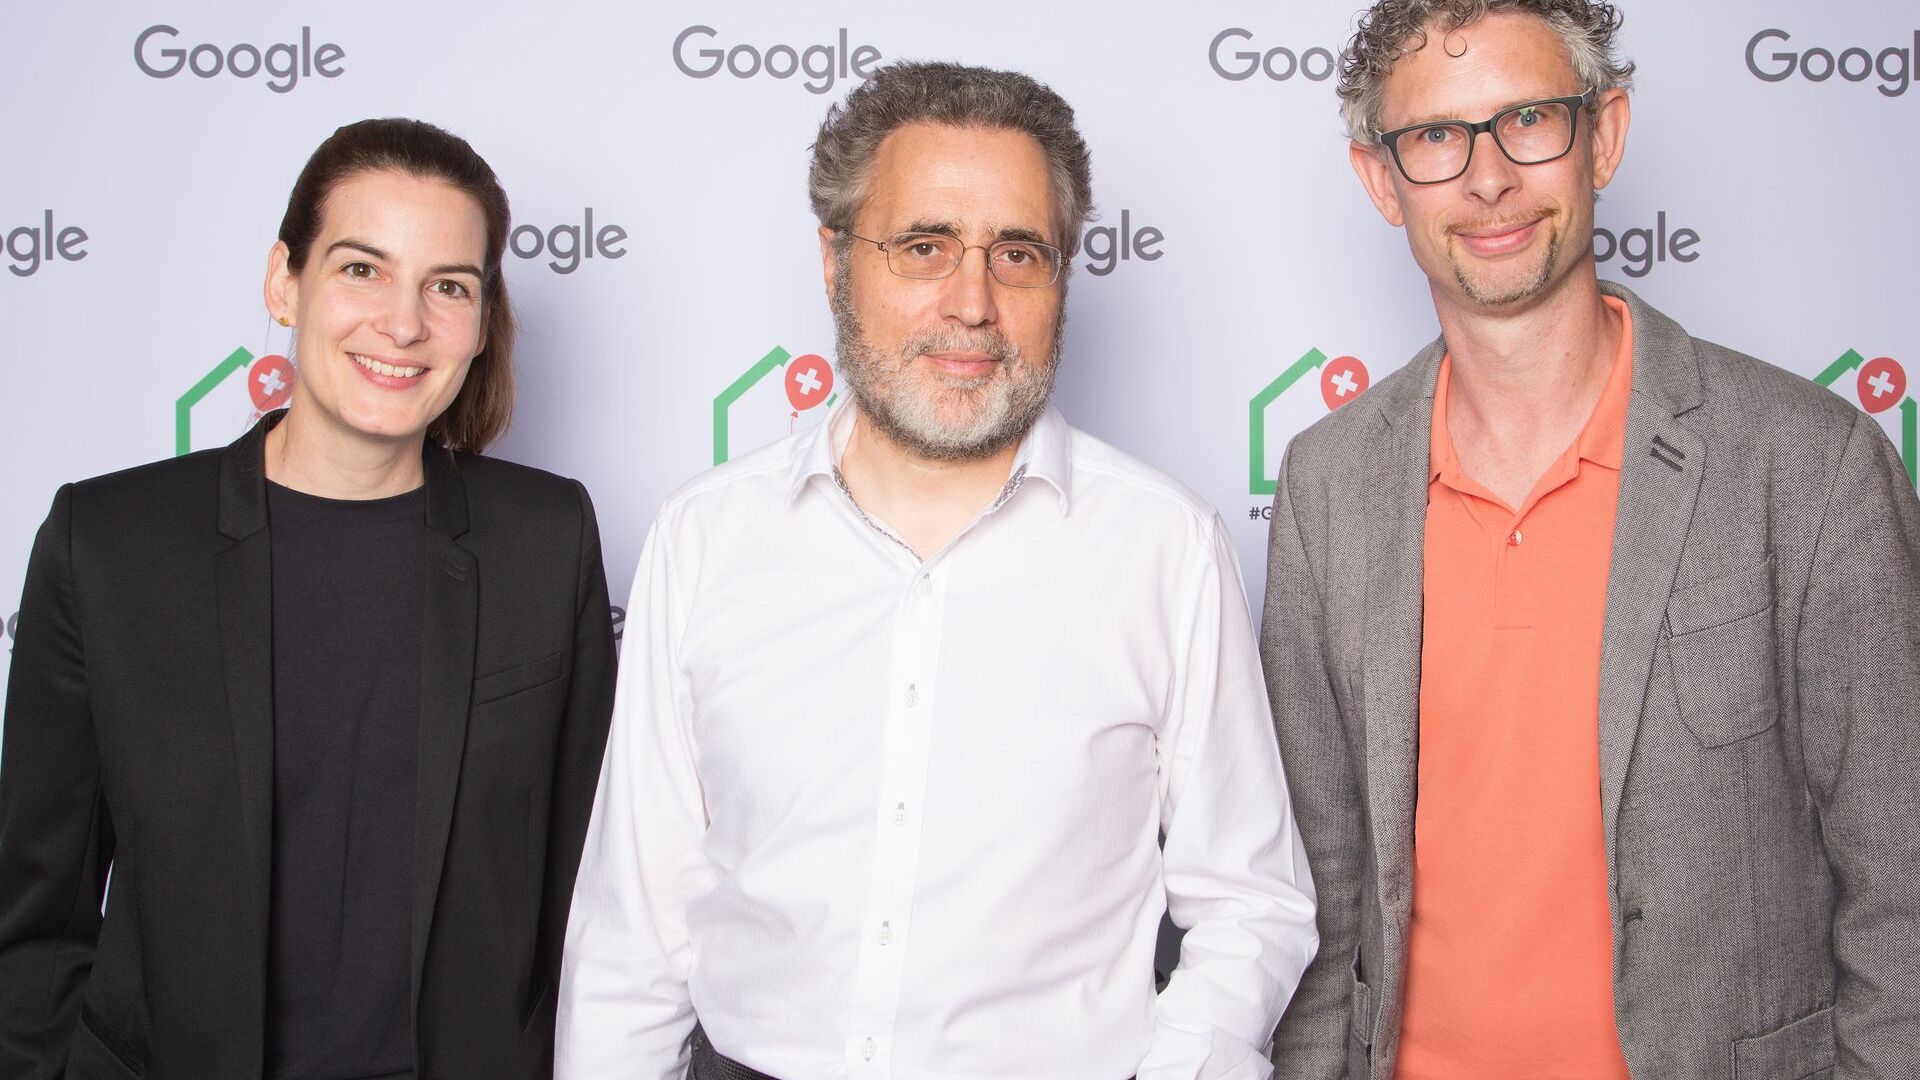 Urs Hölzle, hlavný viceprezident technickej infraštruktúry, a Pia De Carli a Samuel Leiser, mediálny tím Švajčiarska, sa 27. júna 2022 zúčastnili na oficiálnom otvorení nového Campus Europaallee spoločnosti Google v Zürichu.